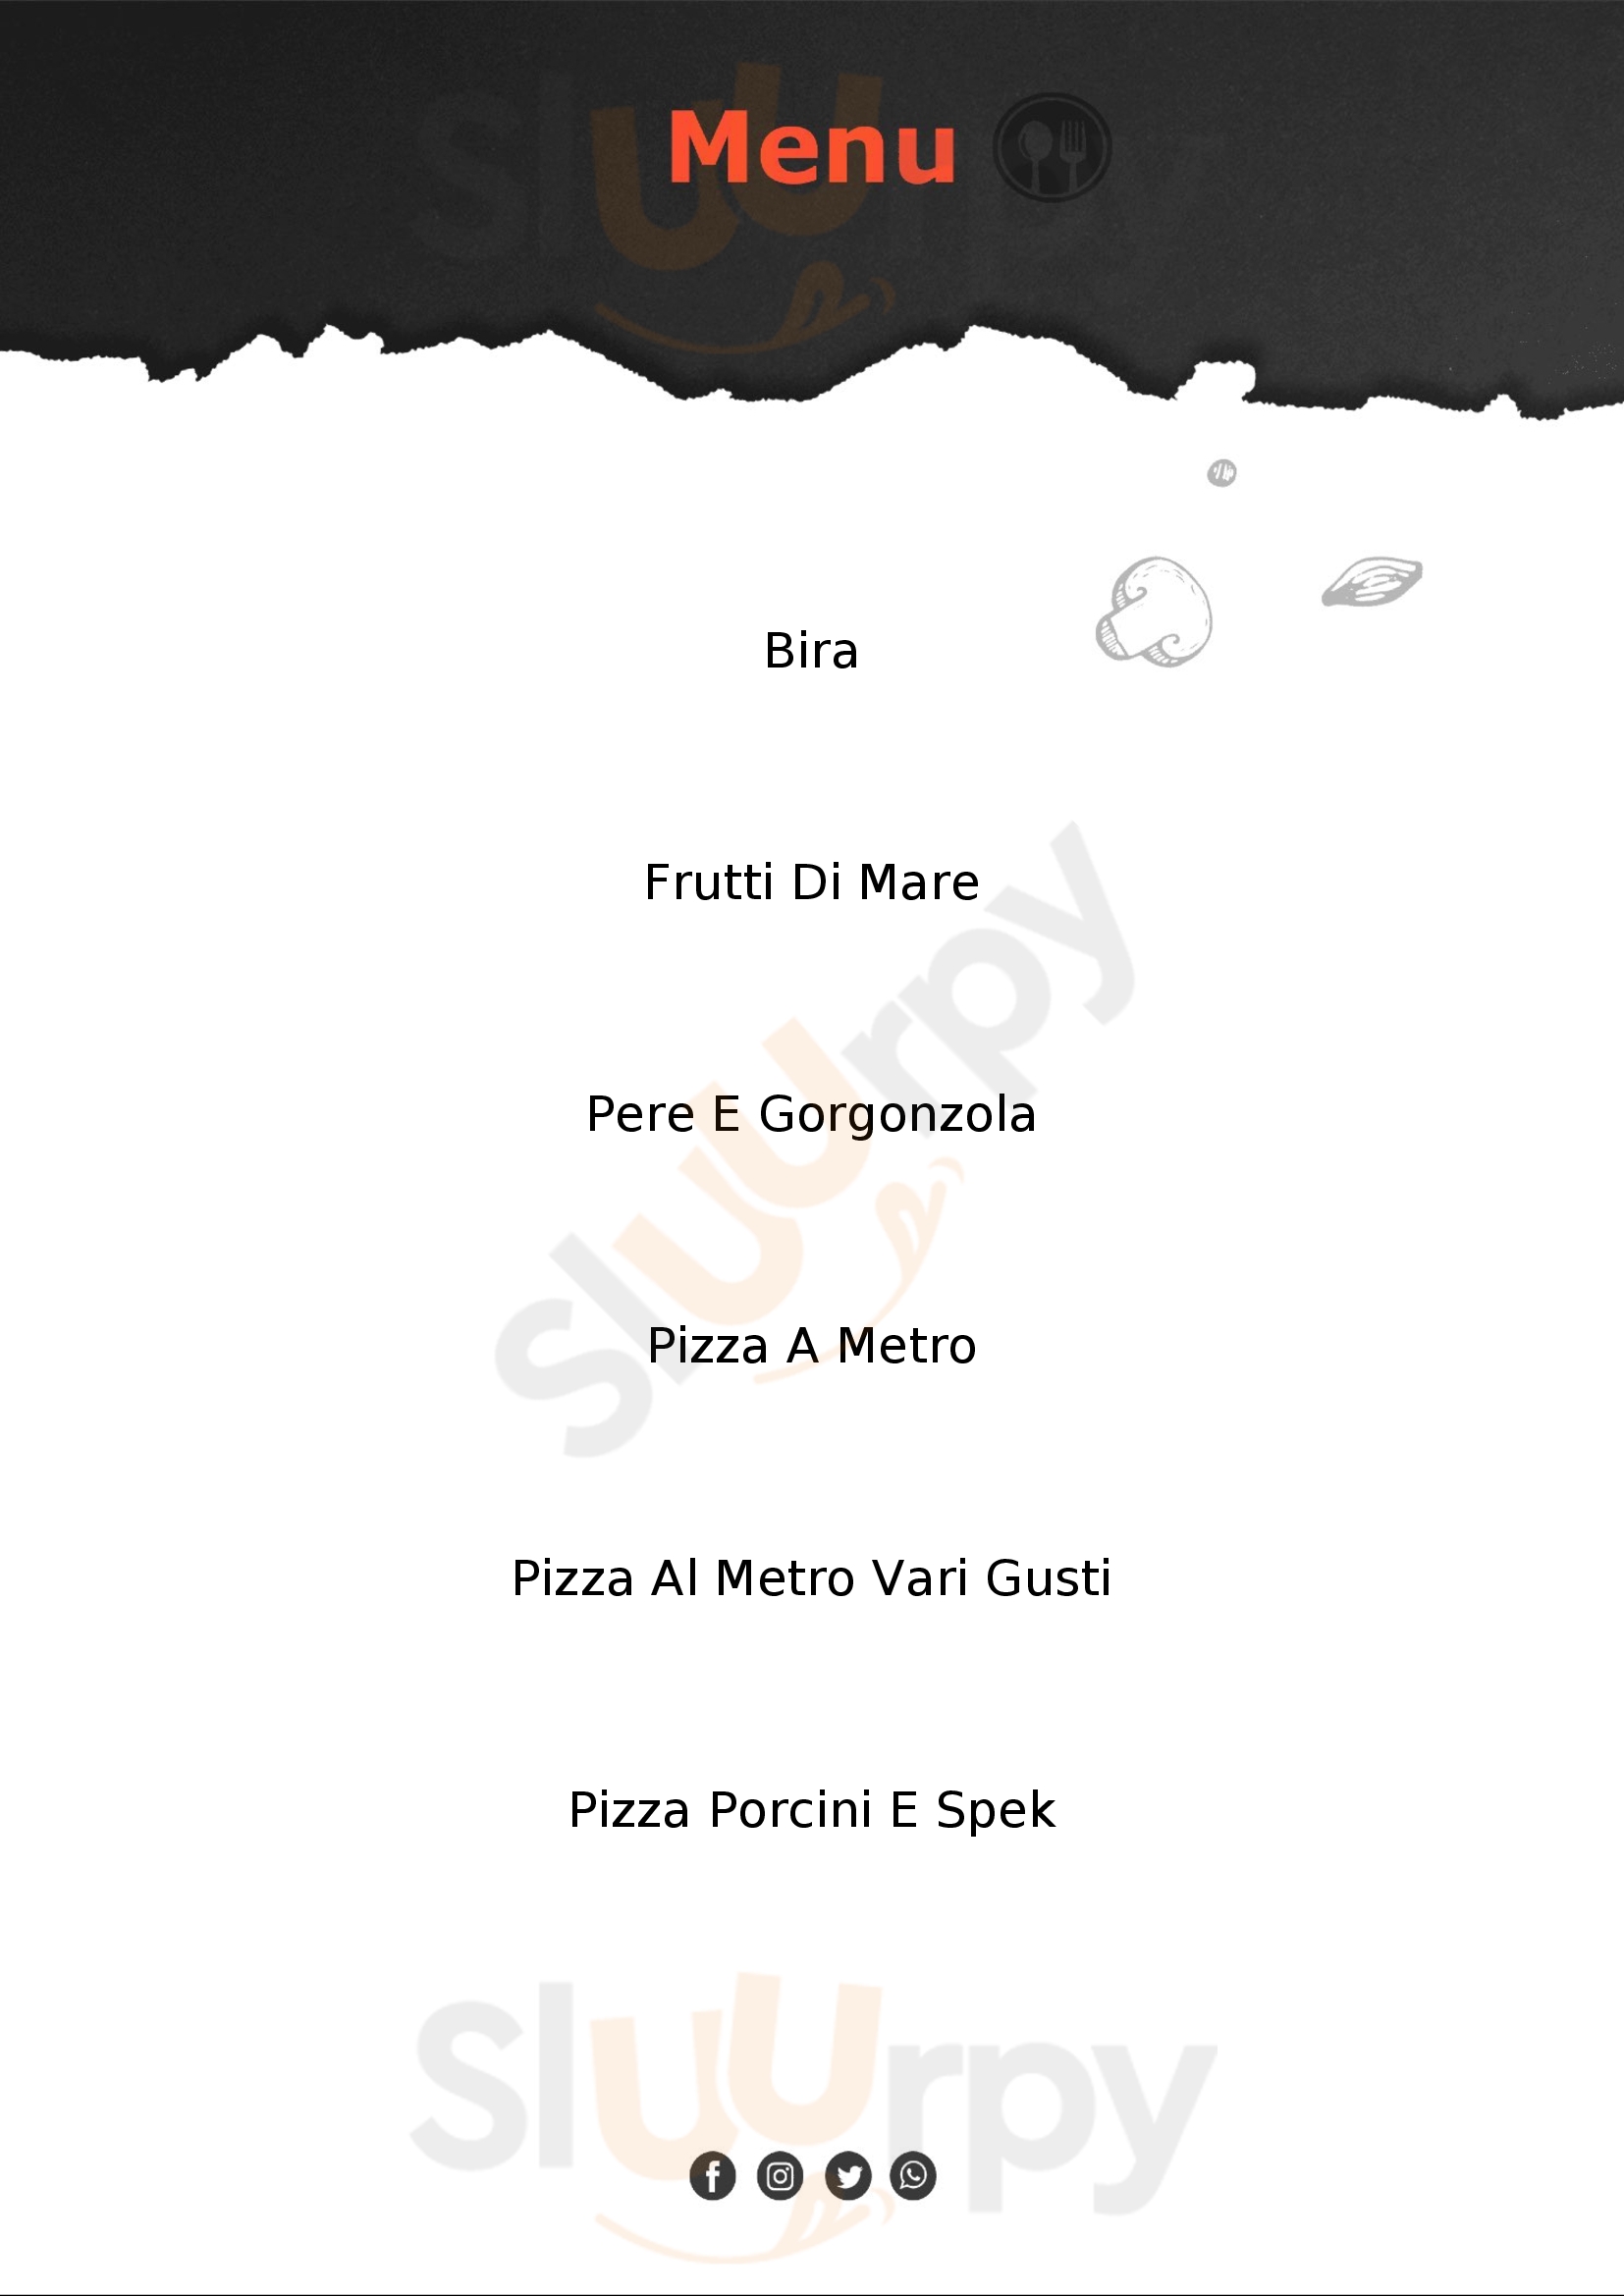 Ristorante Pizzeria President Finale Emilia menù 1 pagina